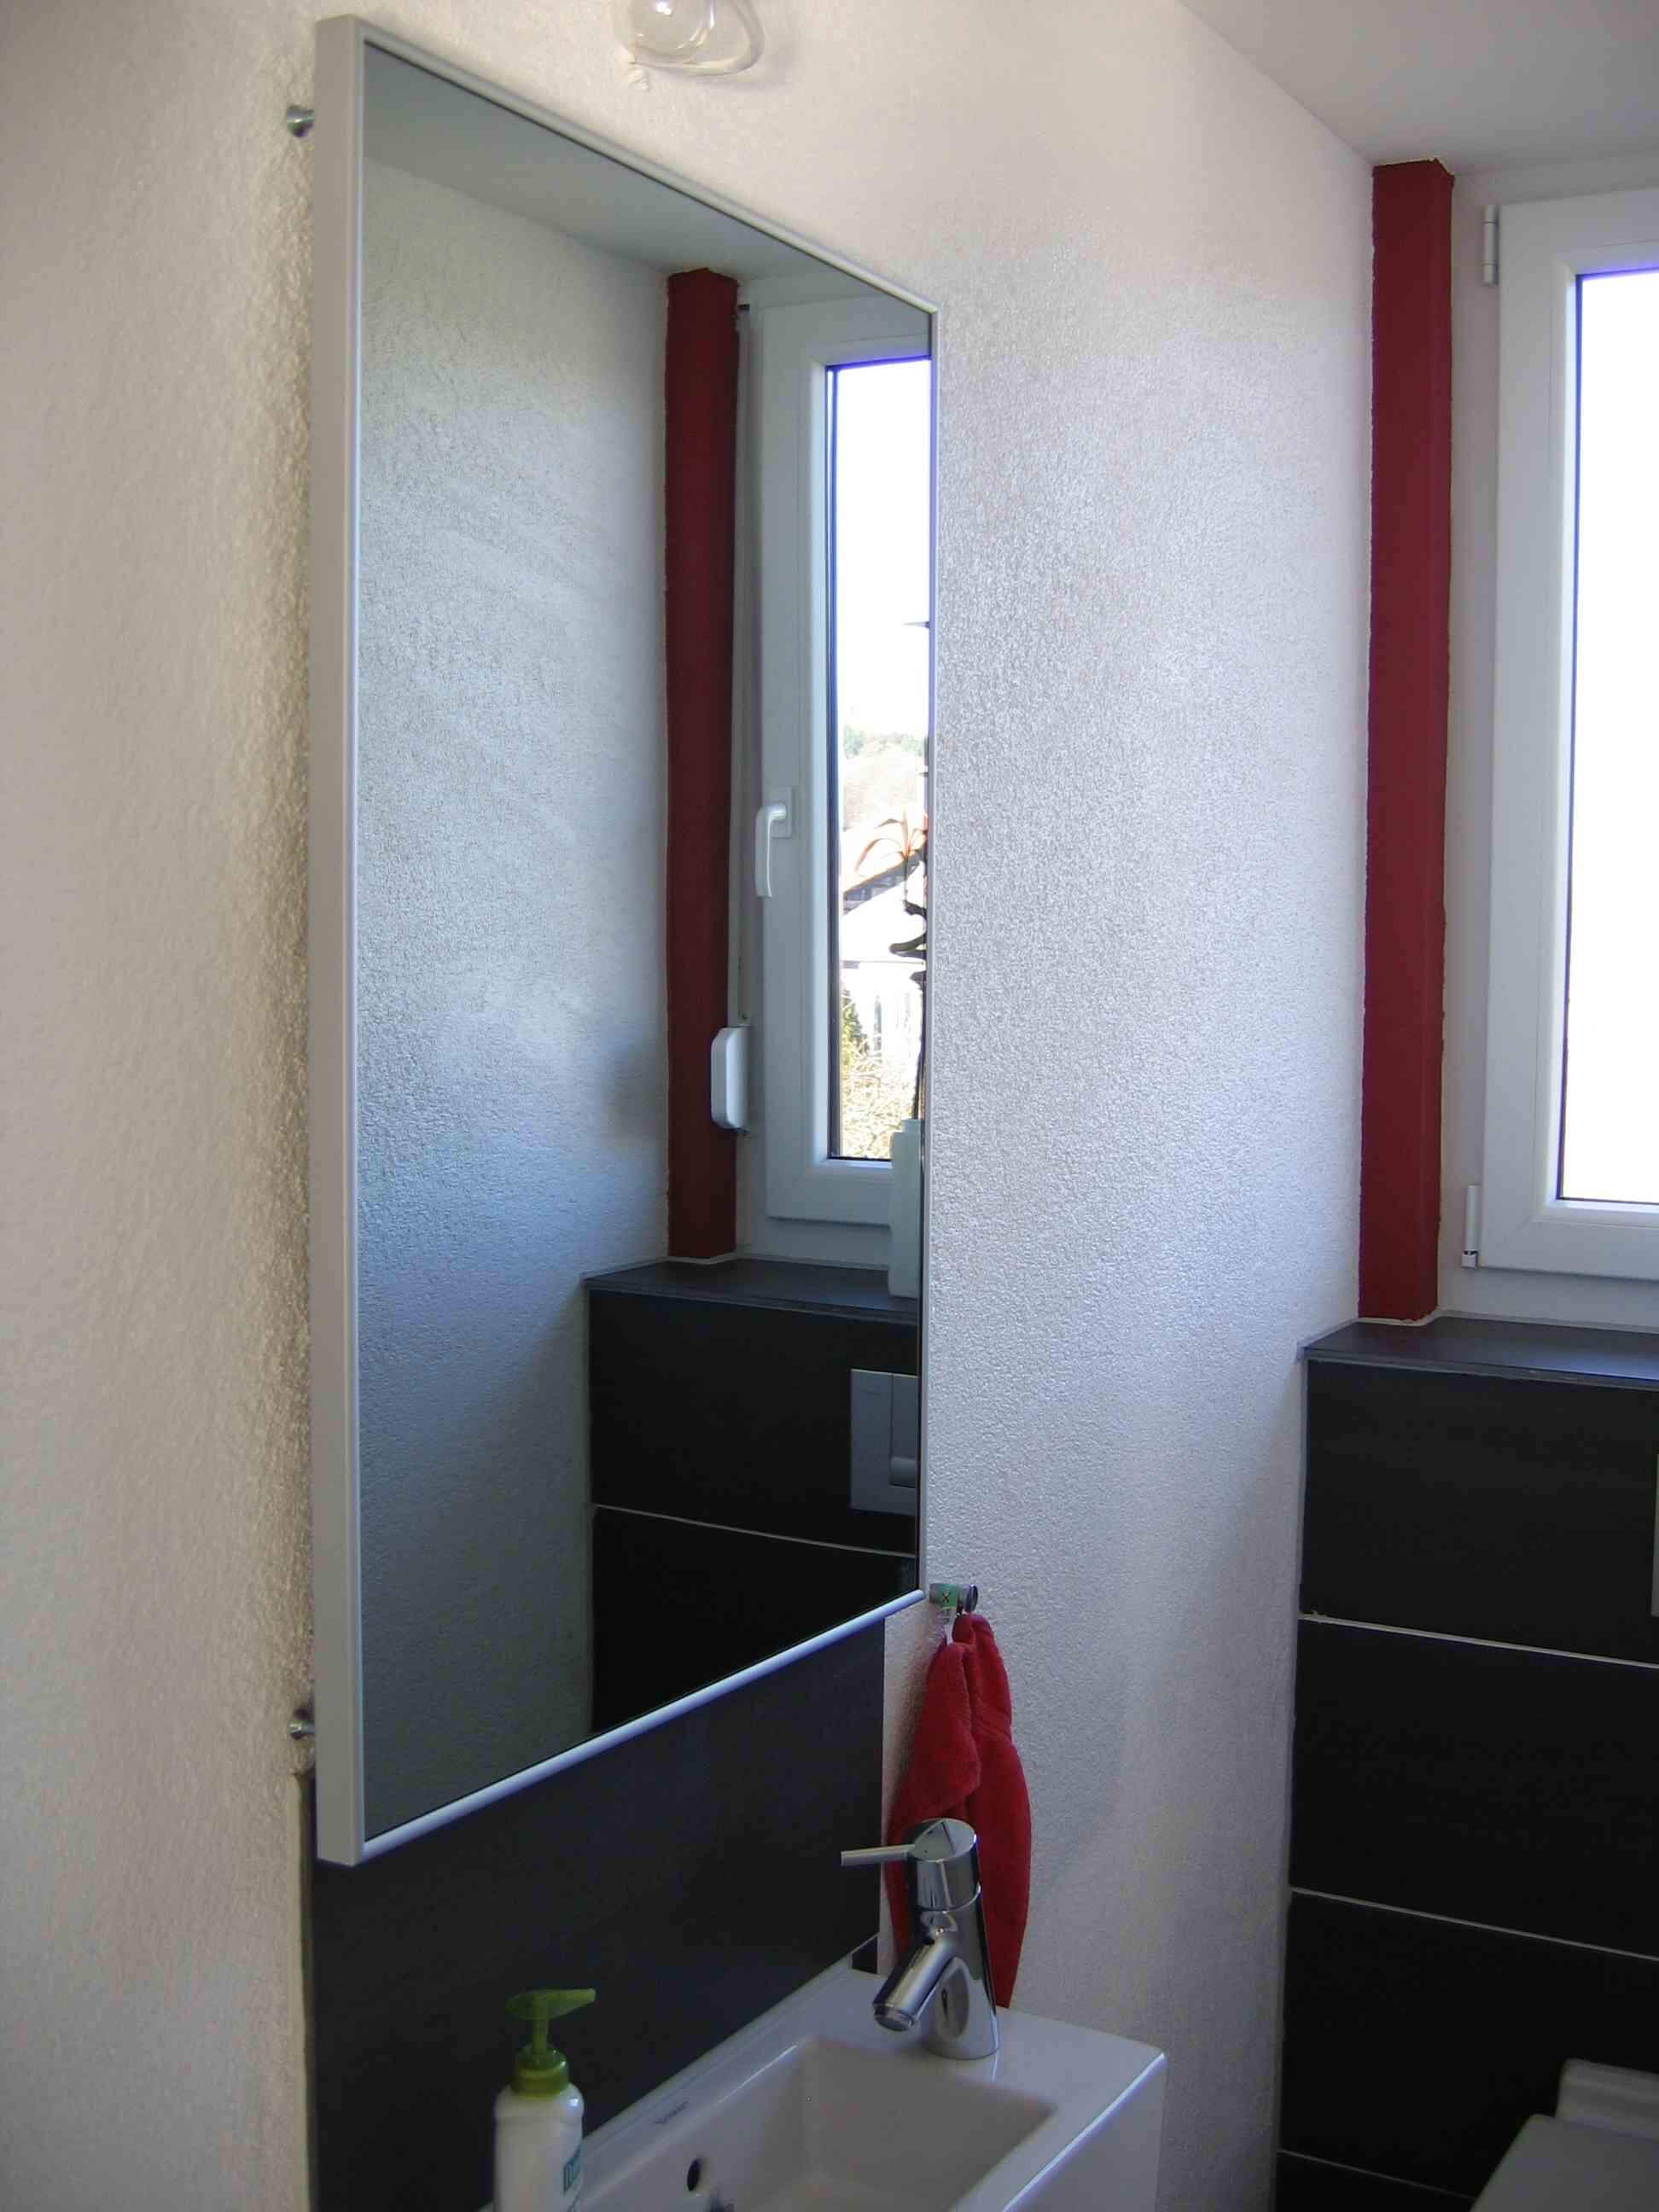 Darstellung einer Infrarot-Spiegelheizung im bad